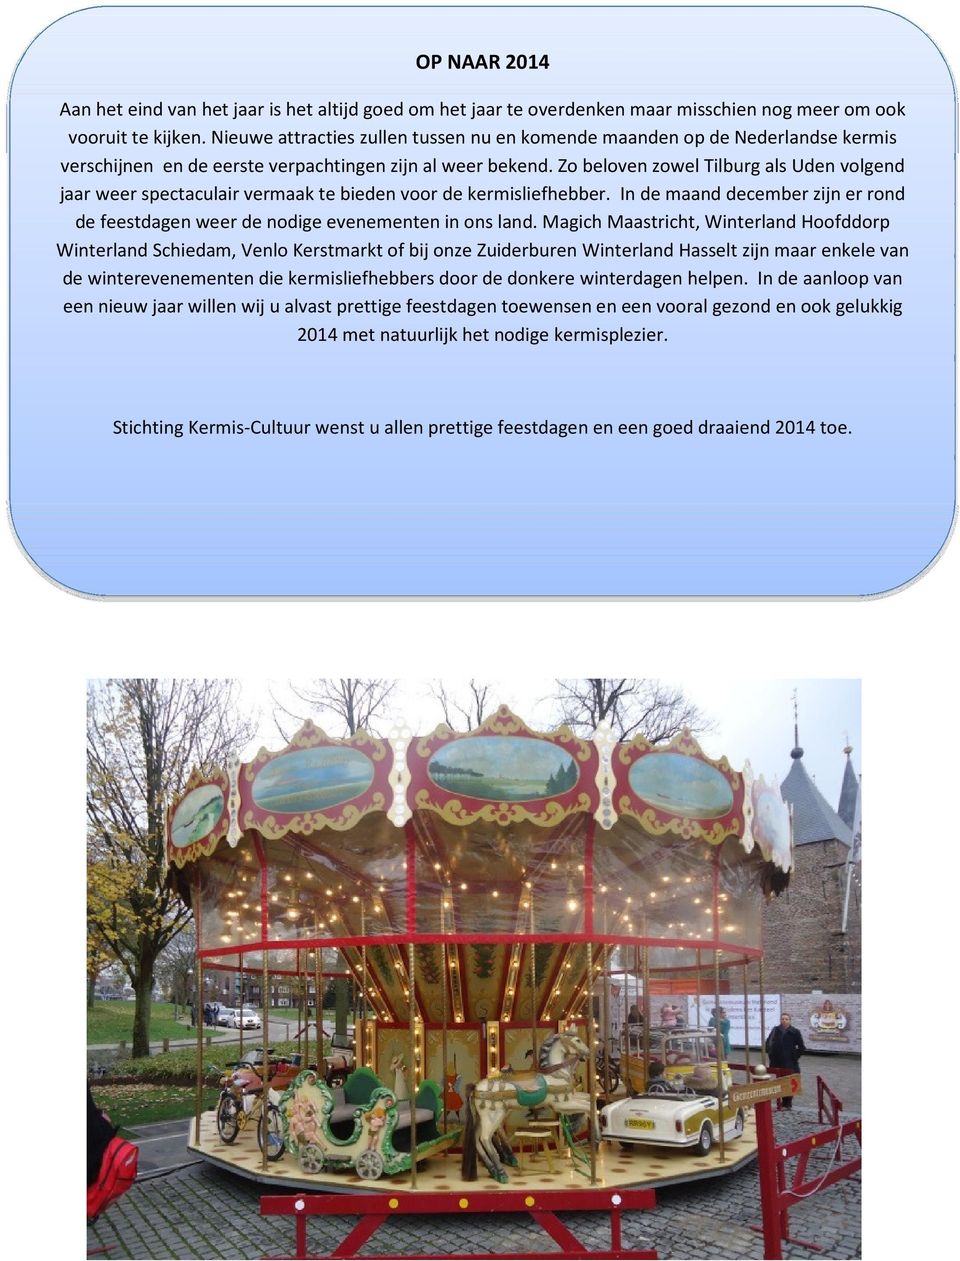 Zo beloven zowel Tilburg als Uden volgend jaar weer spectaculair vermaak te bieden voor de kermisliefhebber. In de maand december zijn er rond de feestdagen weer de nodige evenementen in ons land.